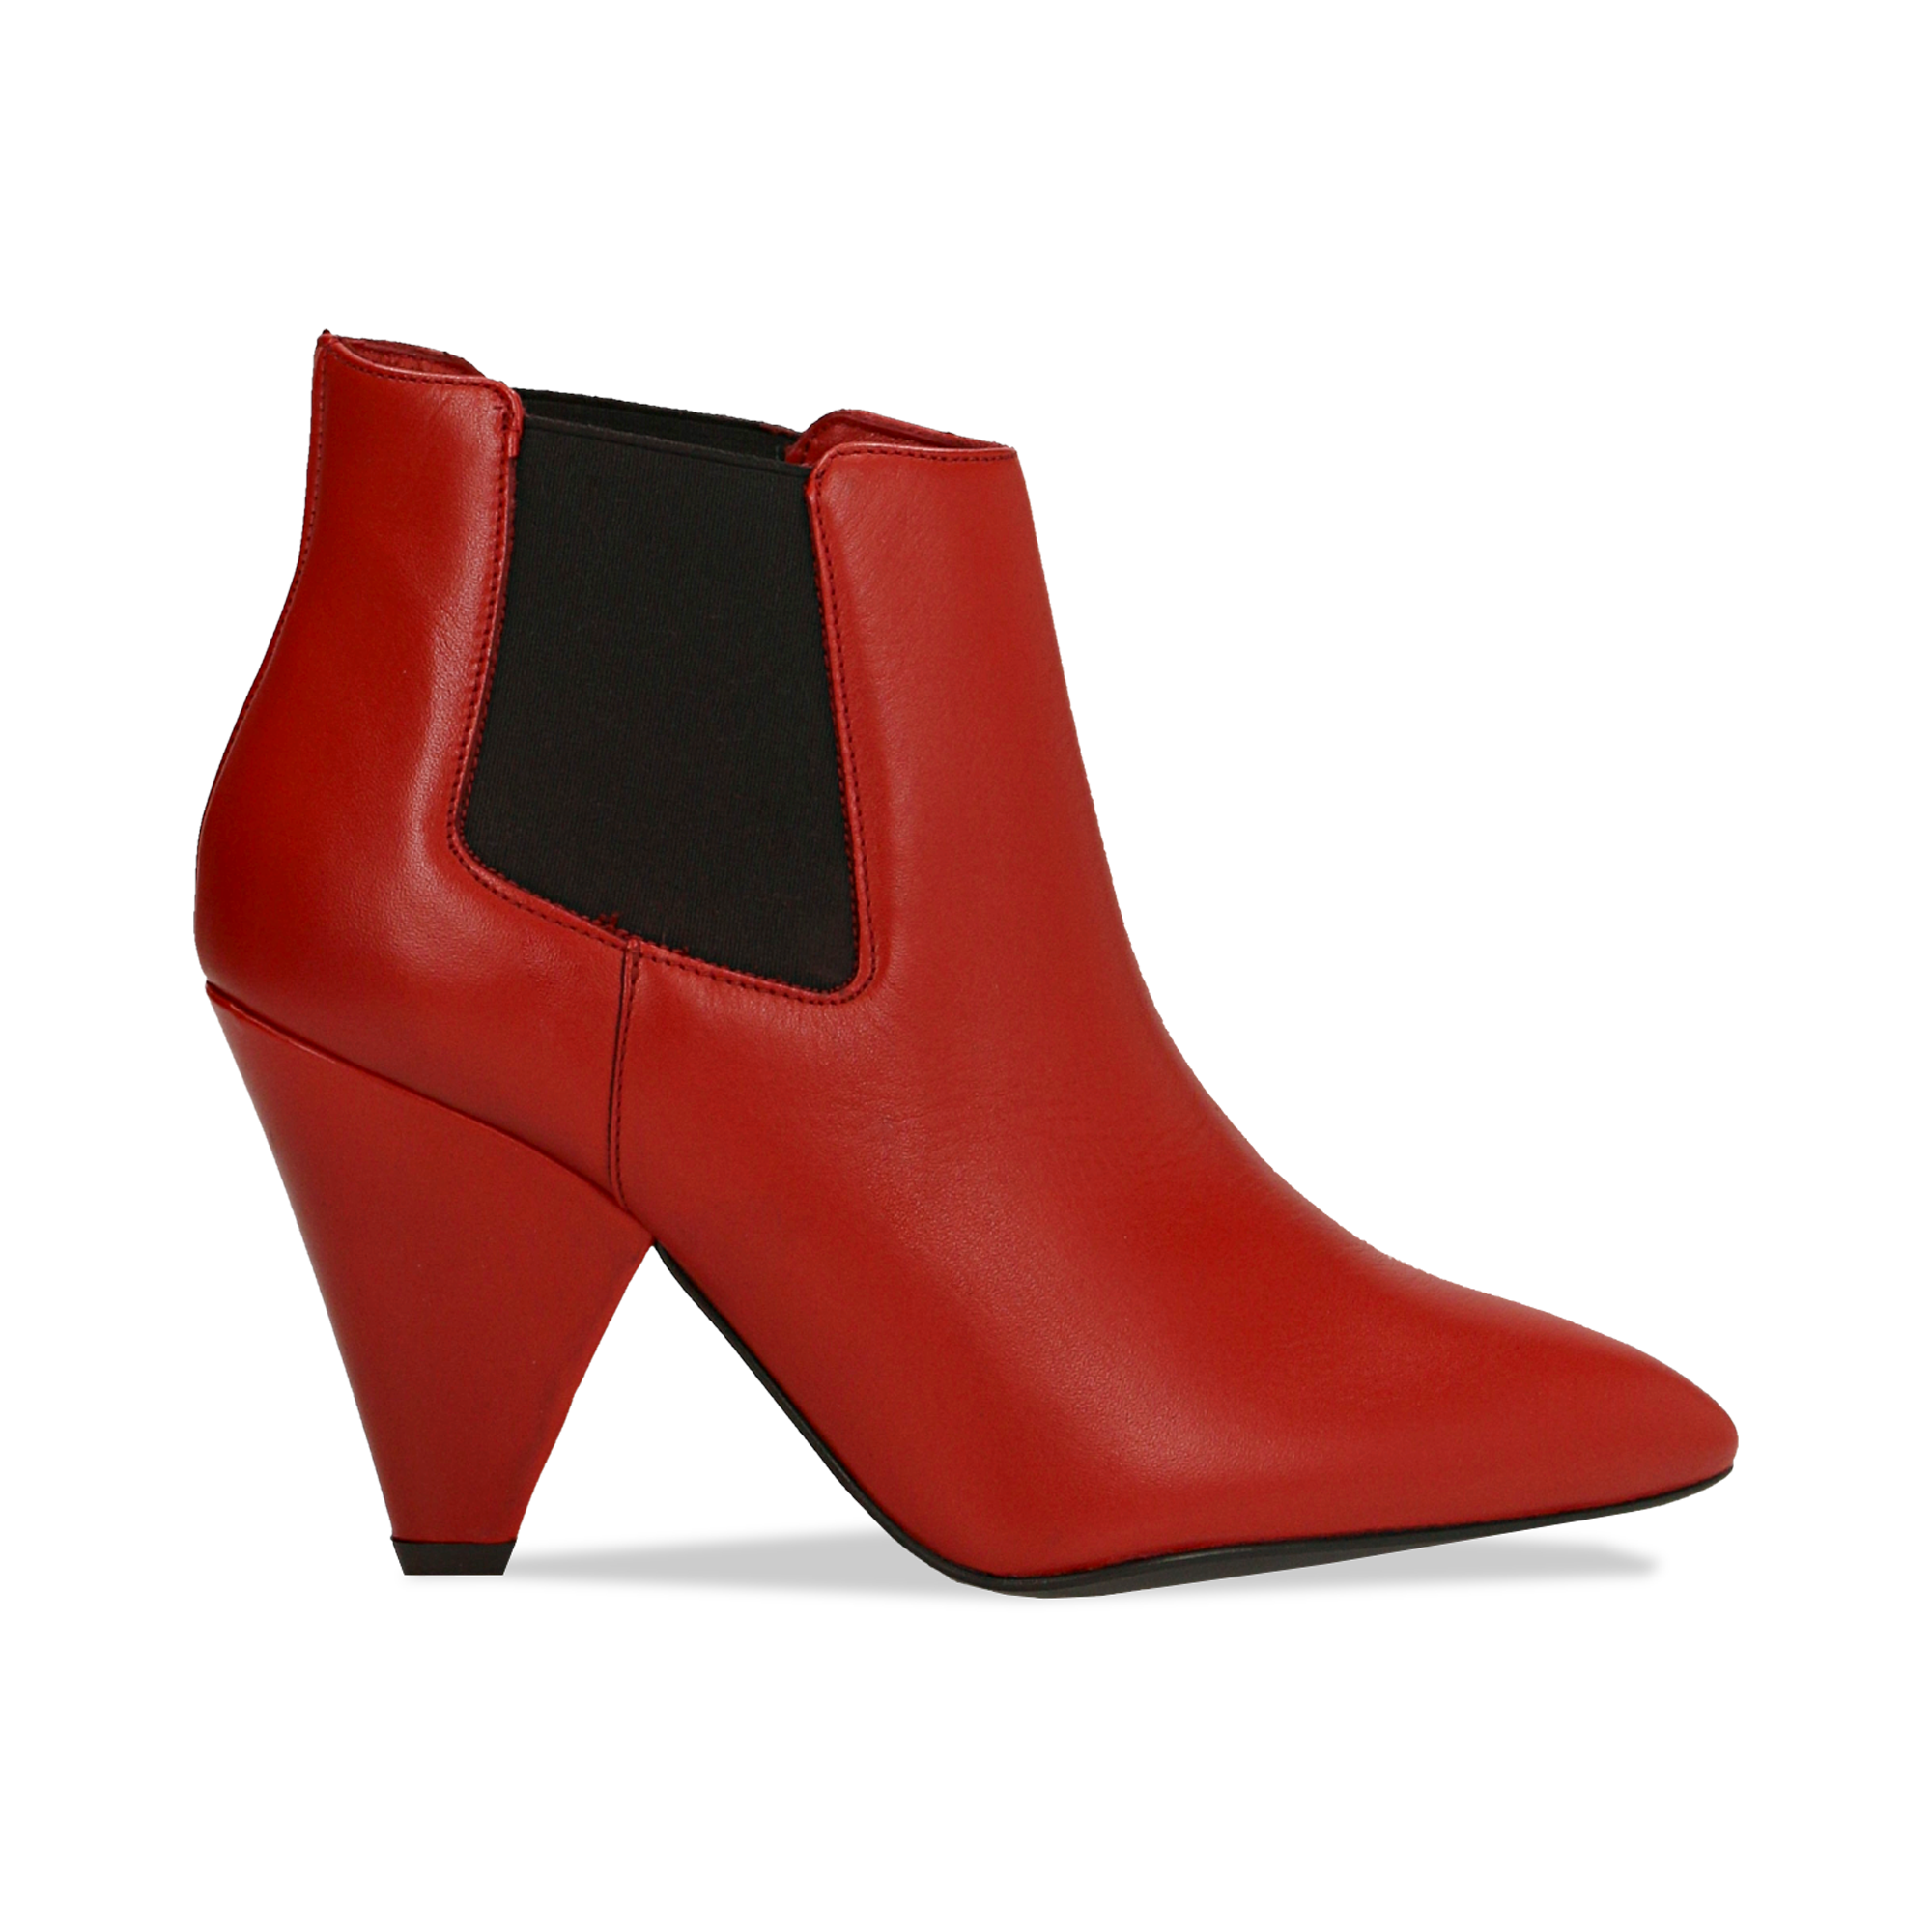 Chelsea Boots rossi in vera pelle, tacco a cono 9 cm